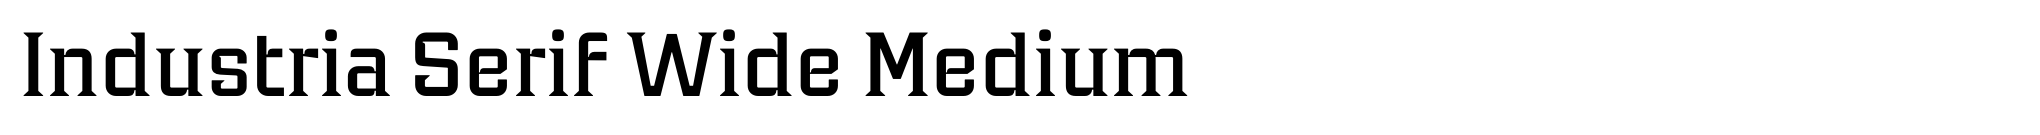 Industria Serif Wide Medium image